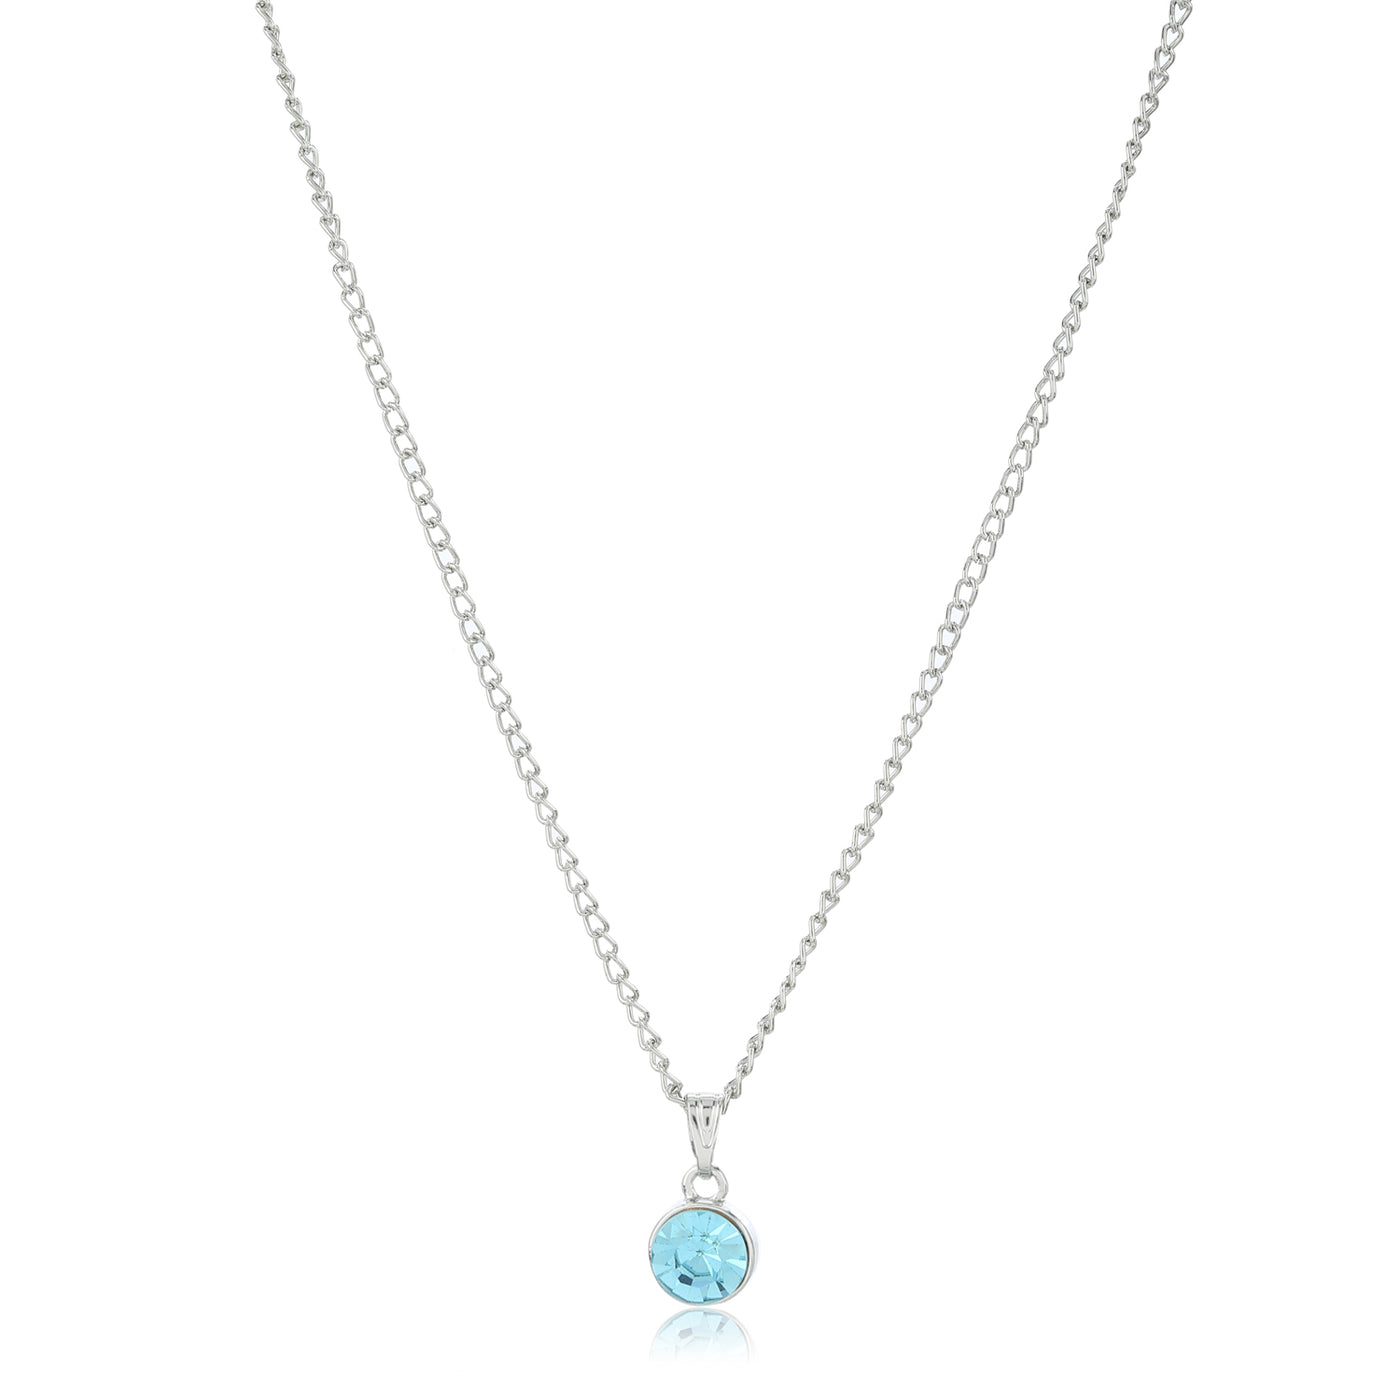 Estele - Rhodium Aquamarine Pendant with Austrian Crystal for Women / Girls